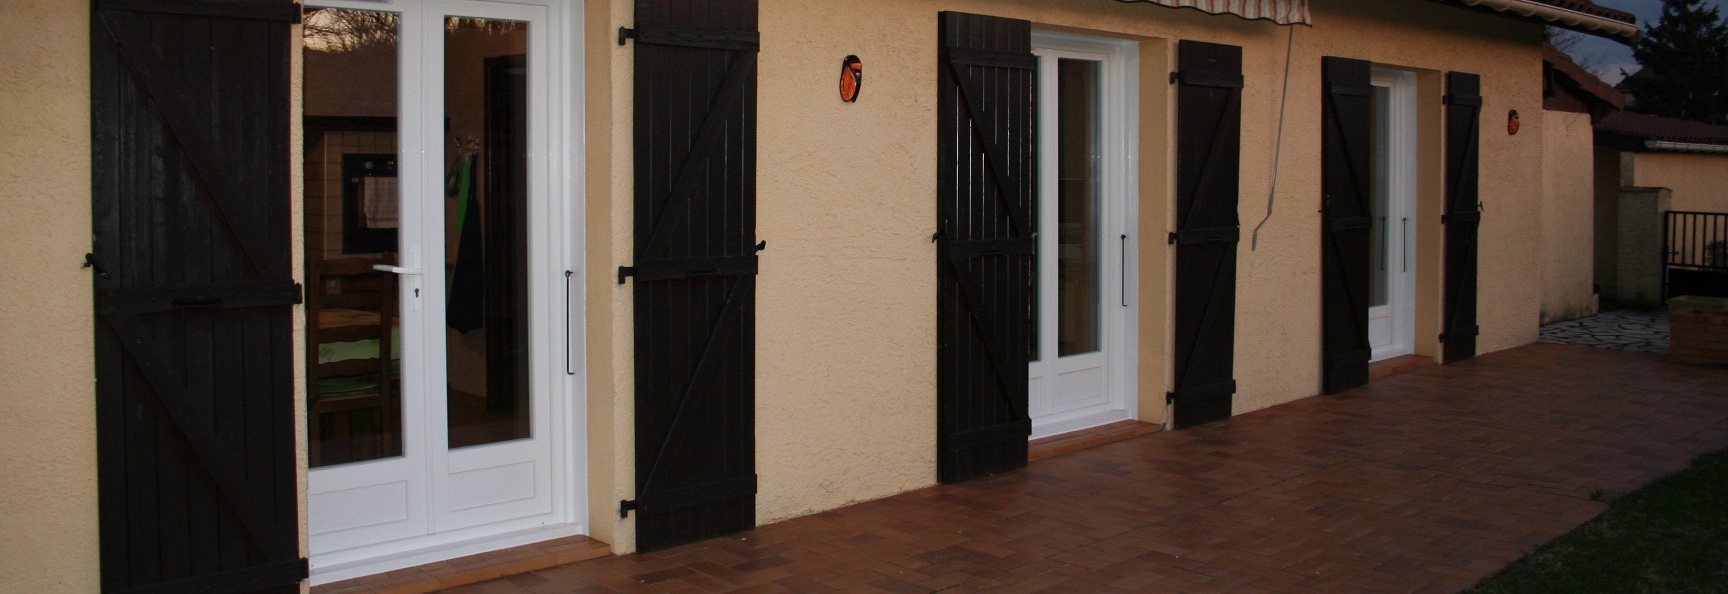 Portes-fenêtres rénovation en PVC installées à la place d'anciennes fenêtres en bois